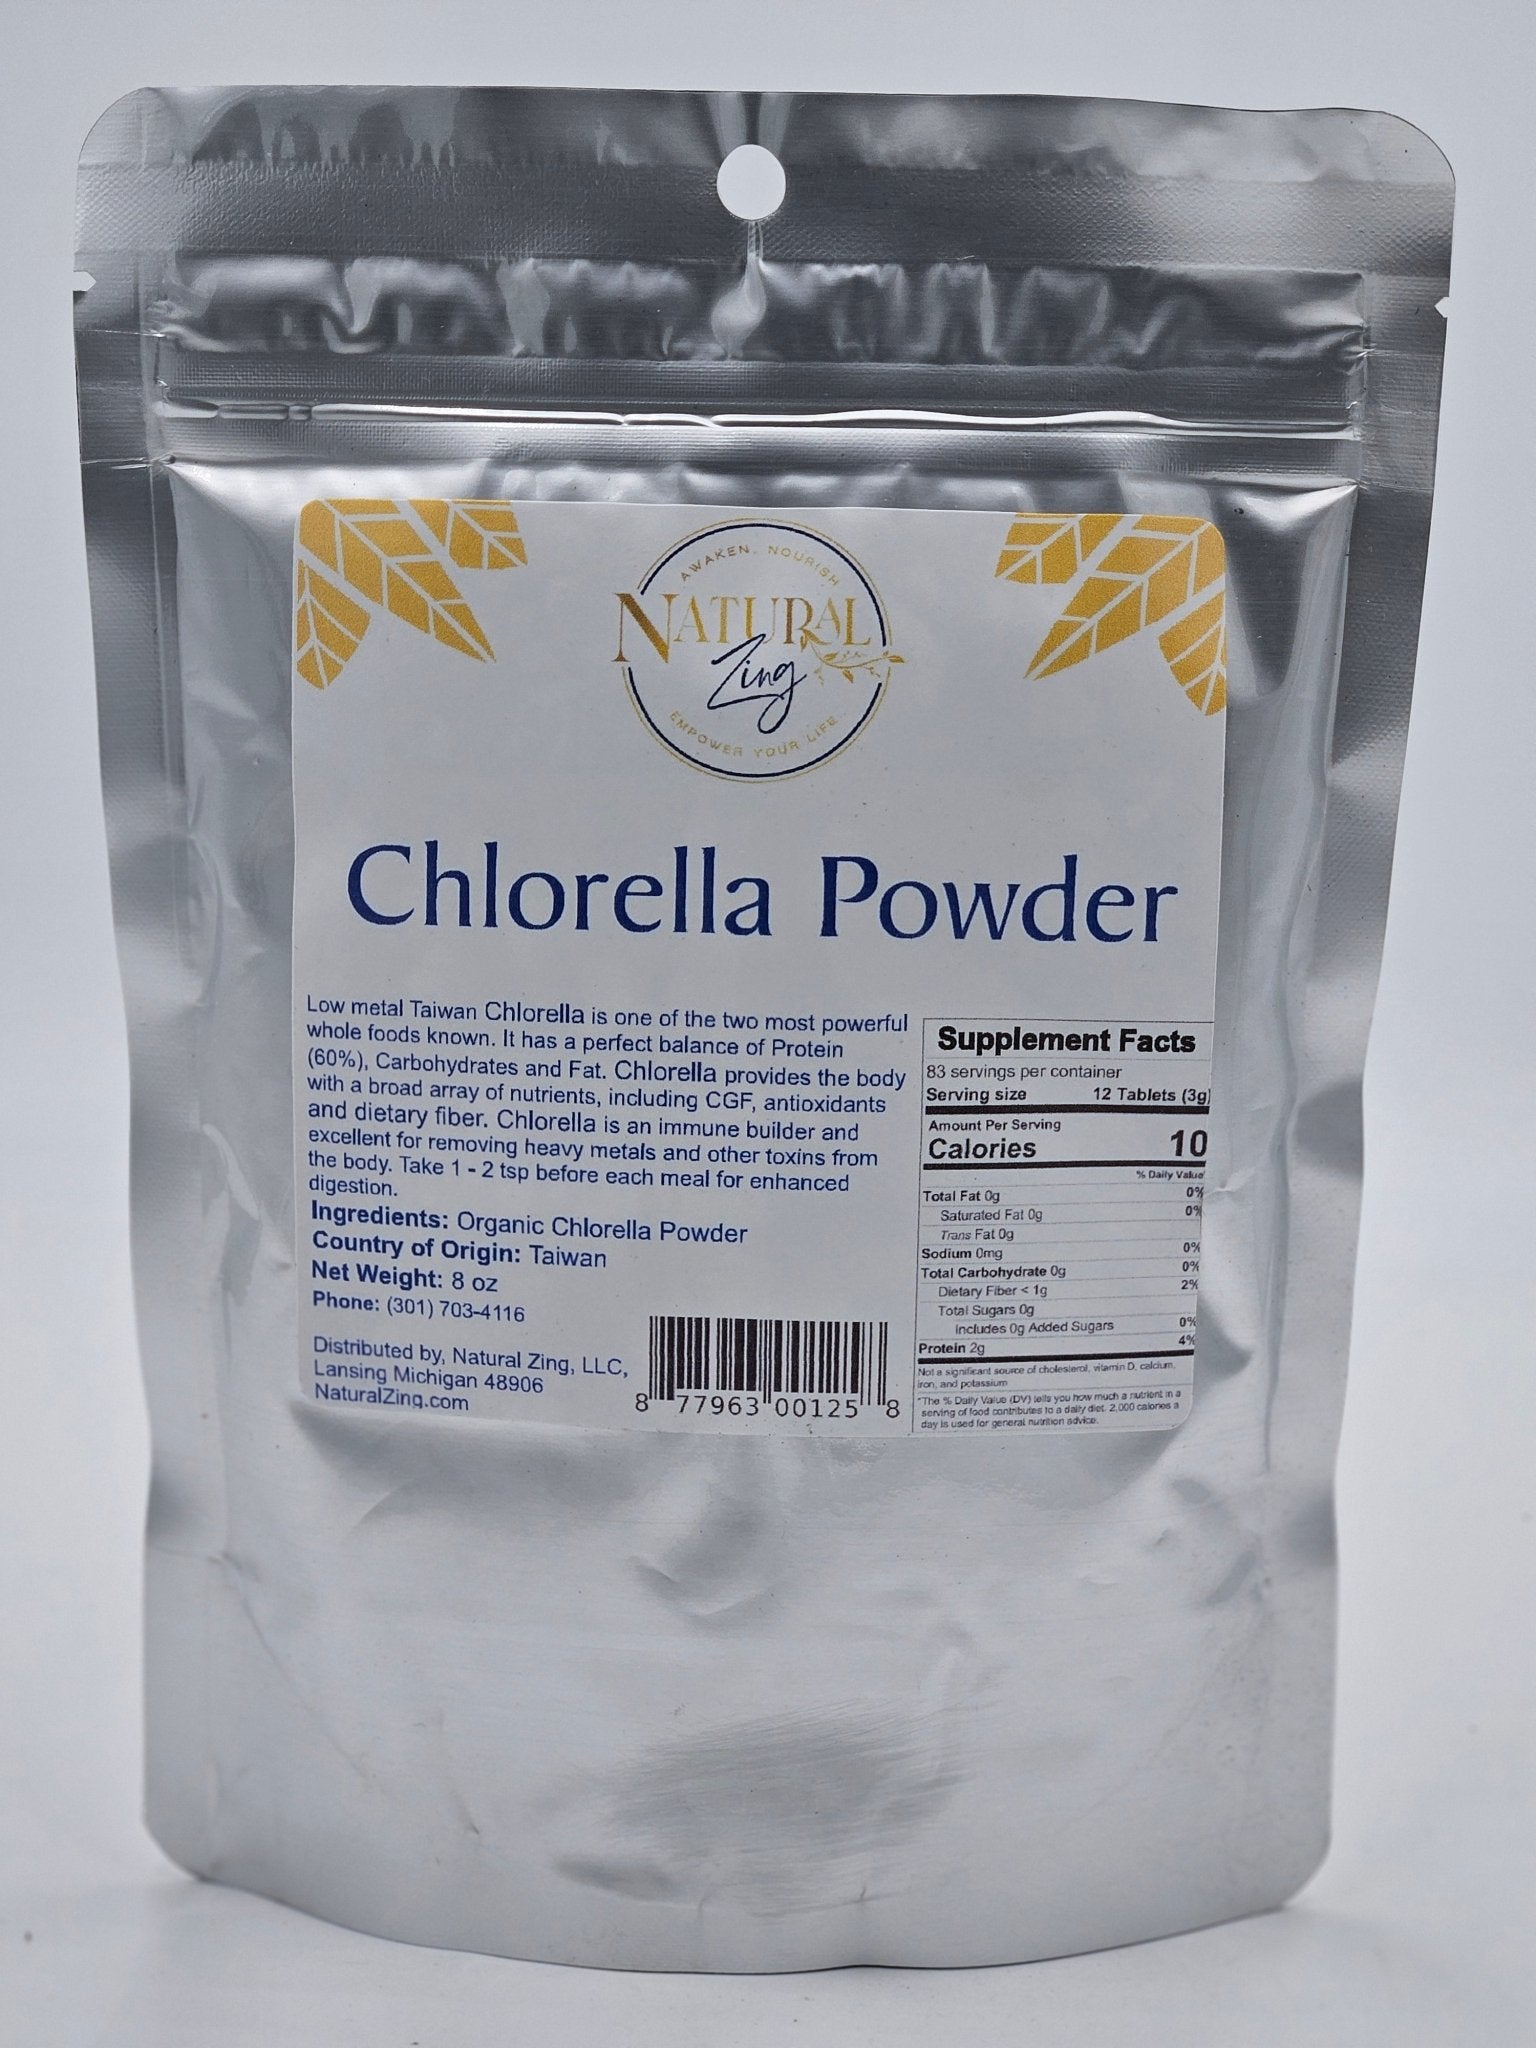 Chlorella Powder 8 oz - Natural Zing